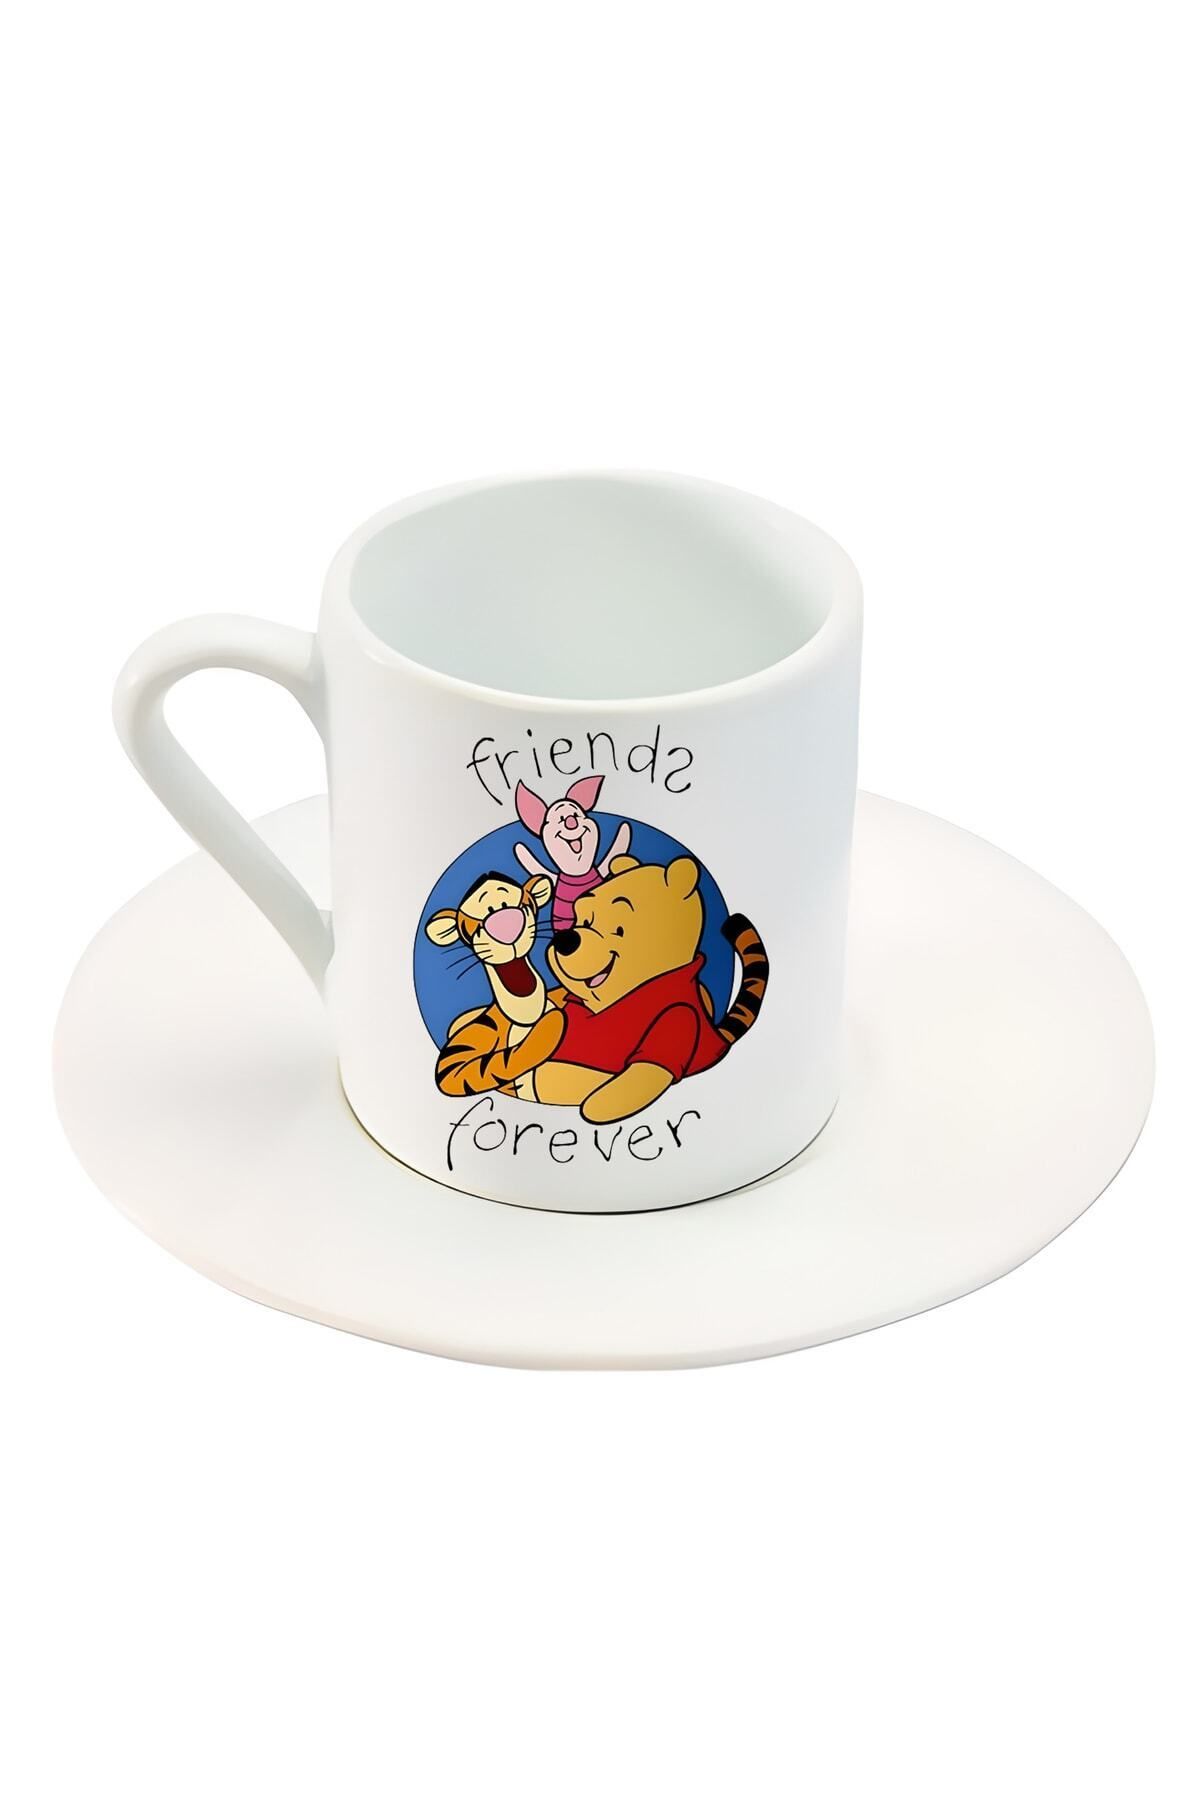 Hediyexpres Pooh & Piglet Karakter Friends Forever Yazı Baskılı Türk Kahve Fincanı